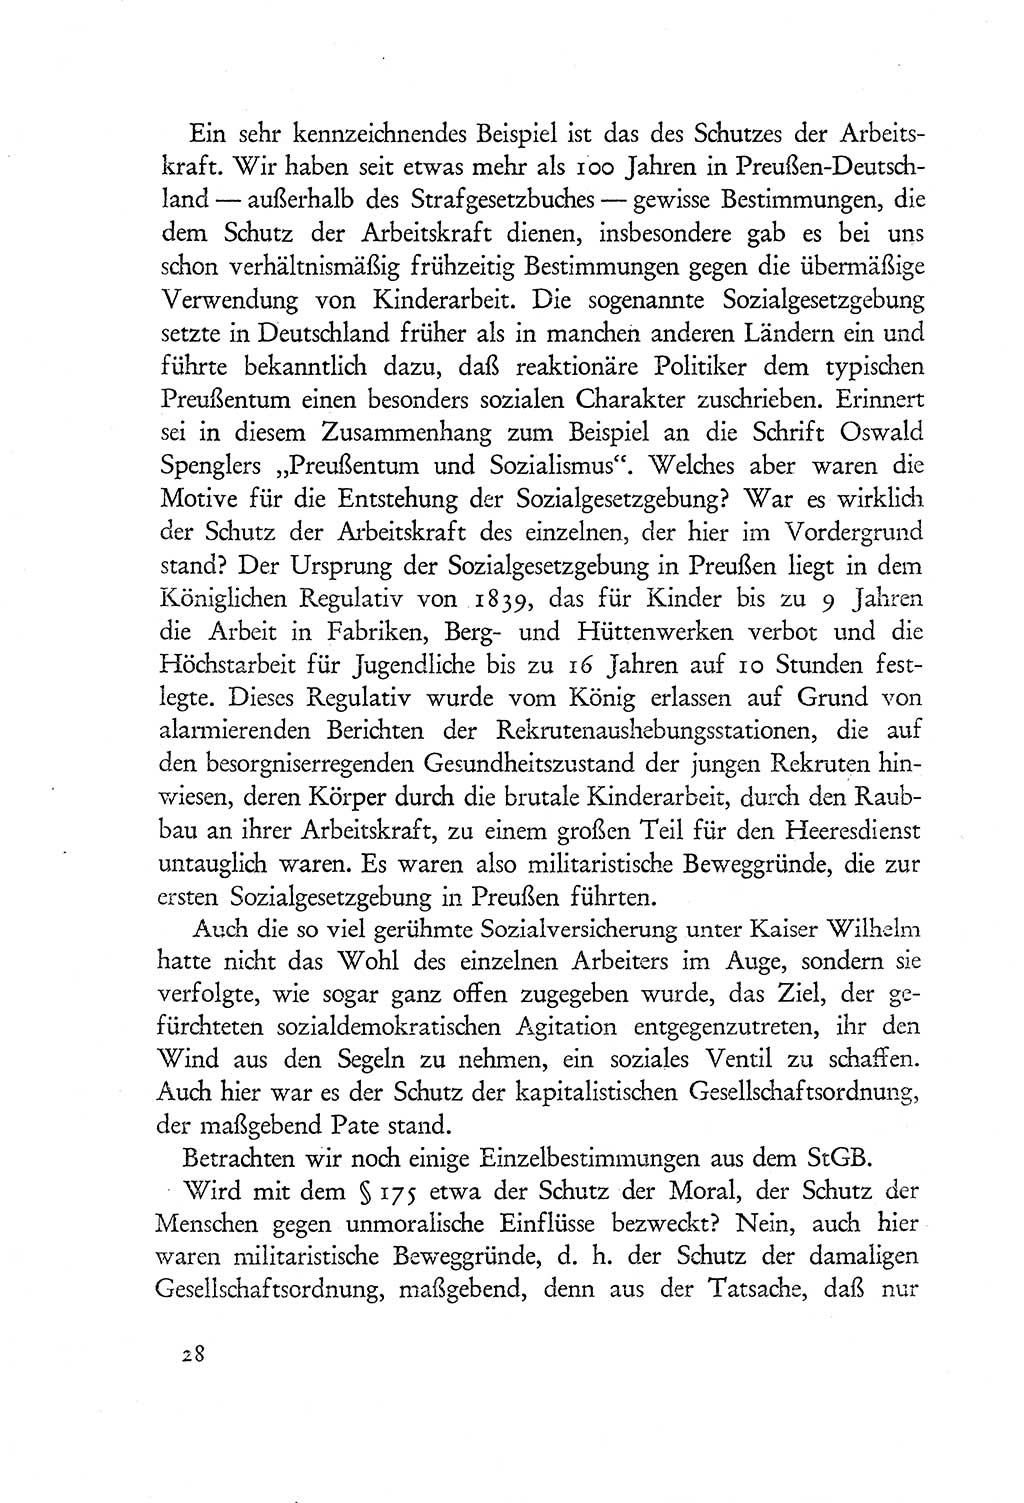 Probleme eines demokratischen Strafrechts [Sowjetische Besatzungszone (SBZ) Deutschlands] 1949, Seite 28 (Probl. Strafr. SBZ Dtl. 1949, S. 28)